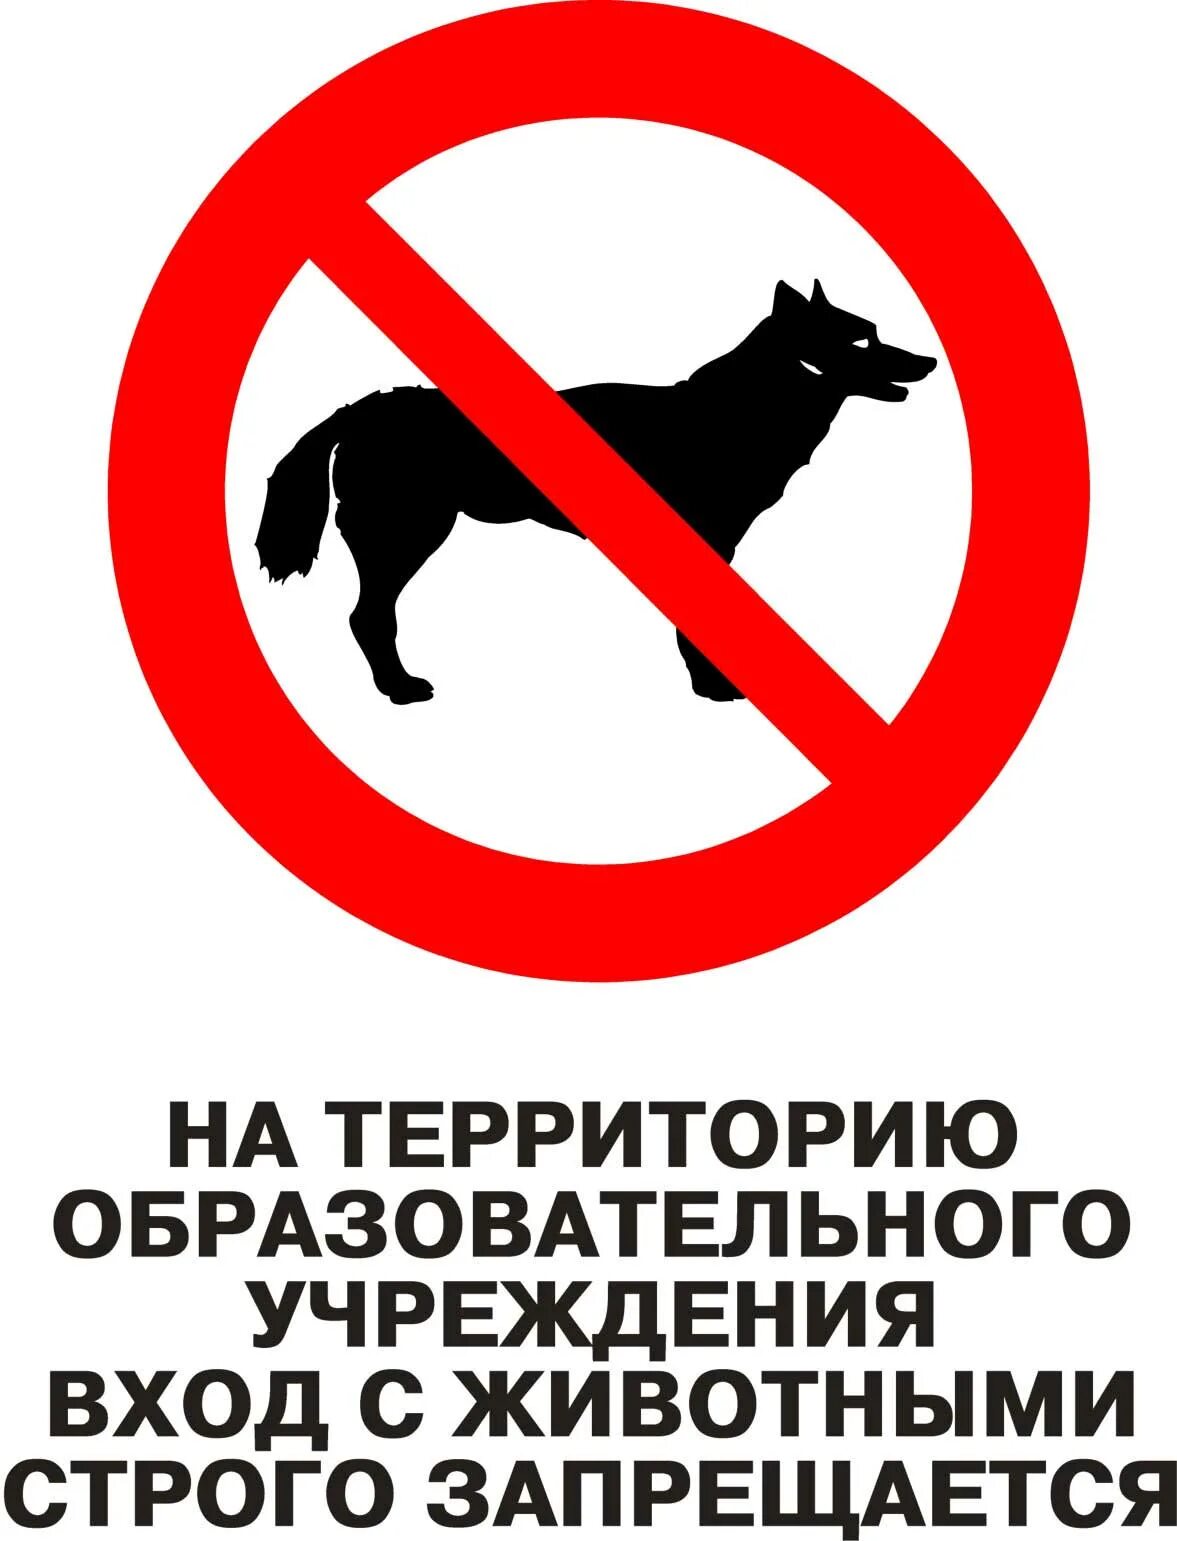 Вход с собаками запрещен. Вход с санками запрещен. Выгул собак запрещен. Вход на территорию школы с собаками запрещен.